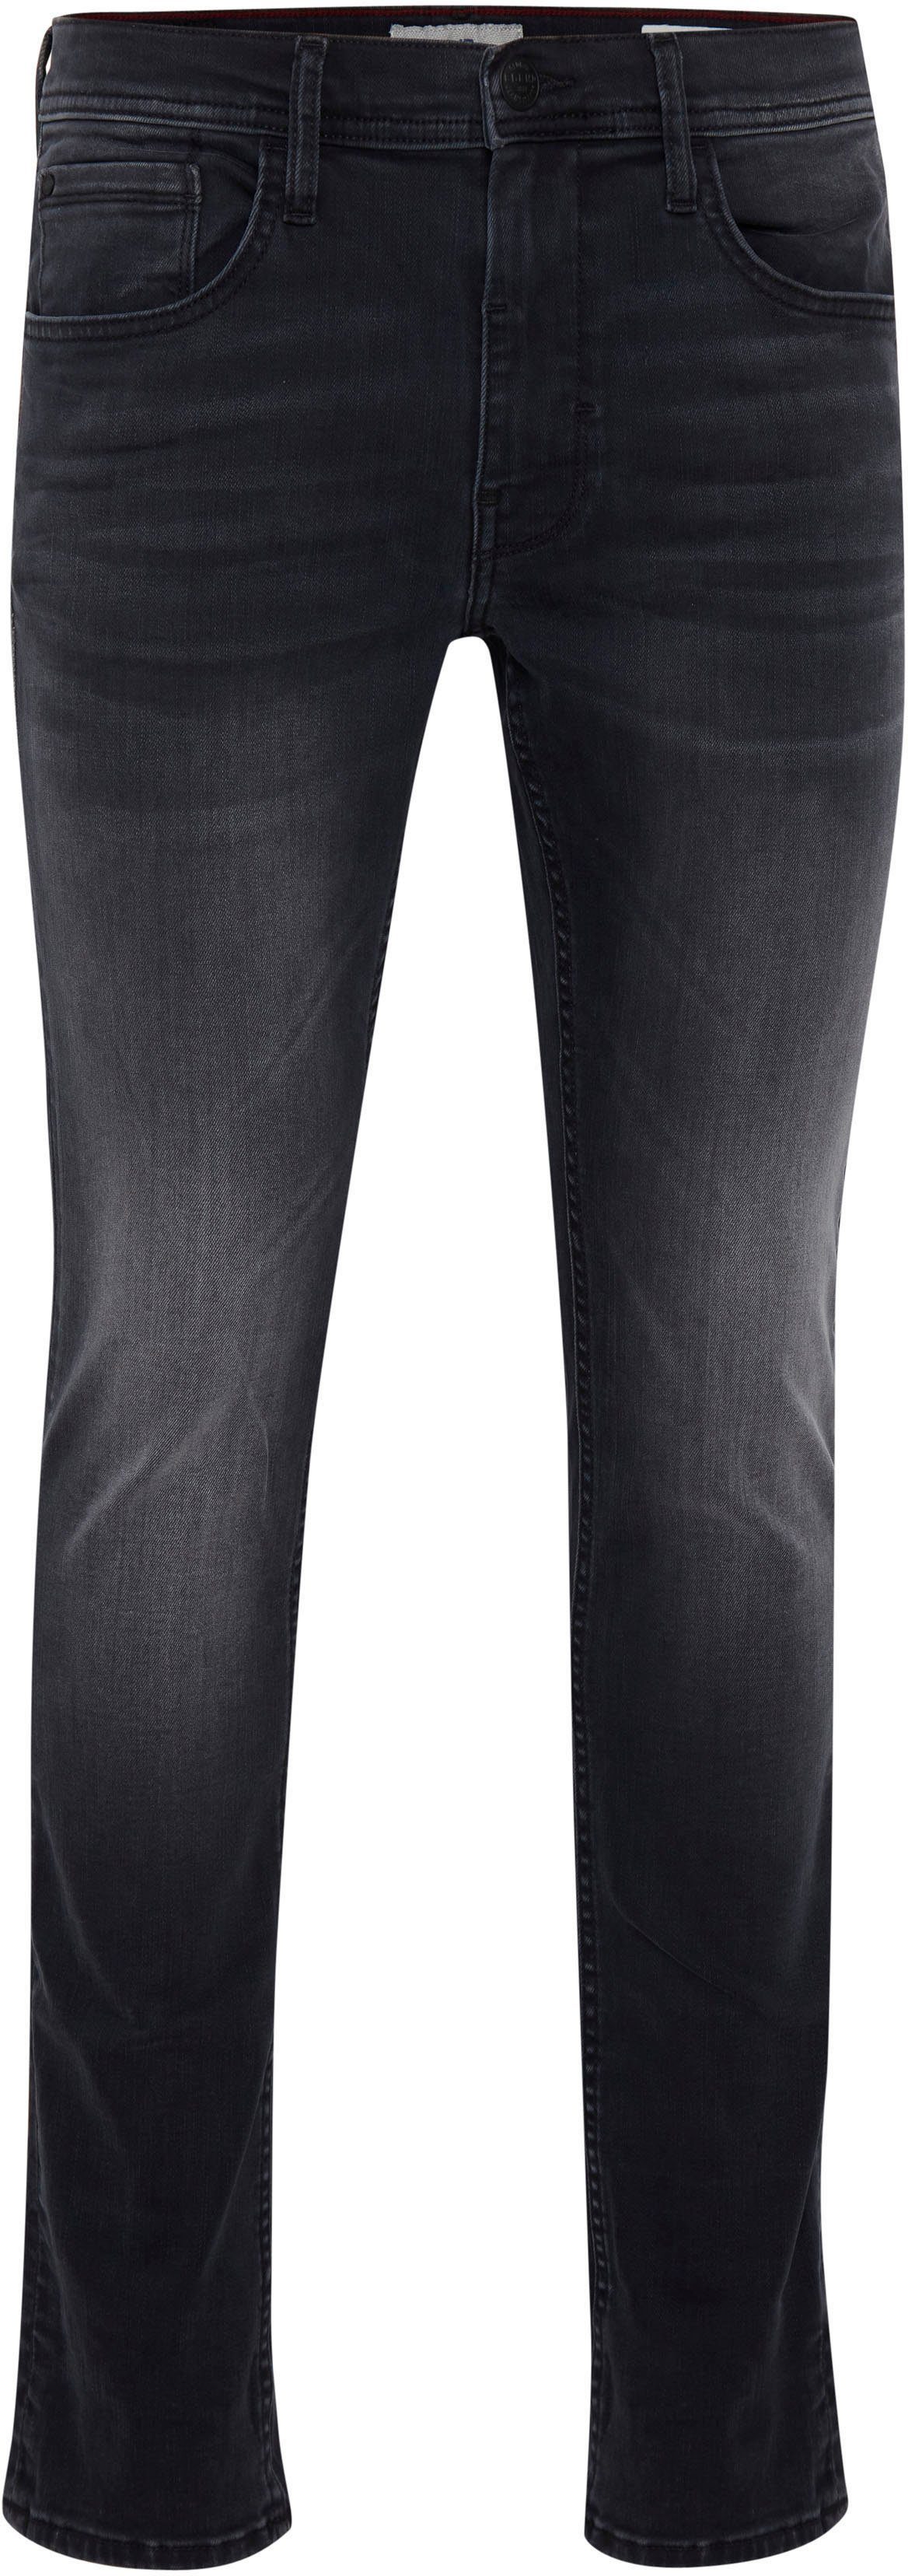 washed Blend Jet Multiflex Slim-fit-Jeans black